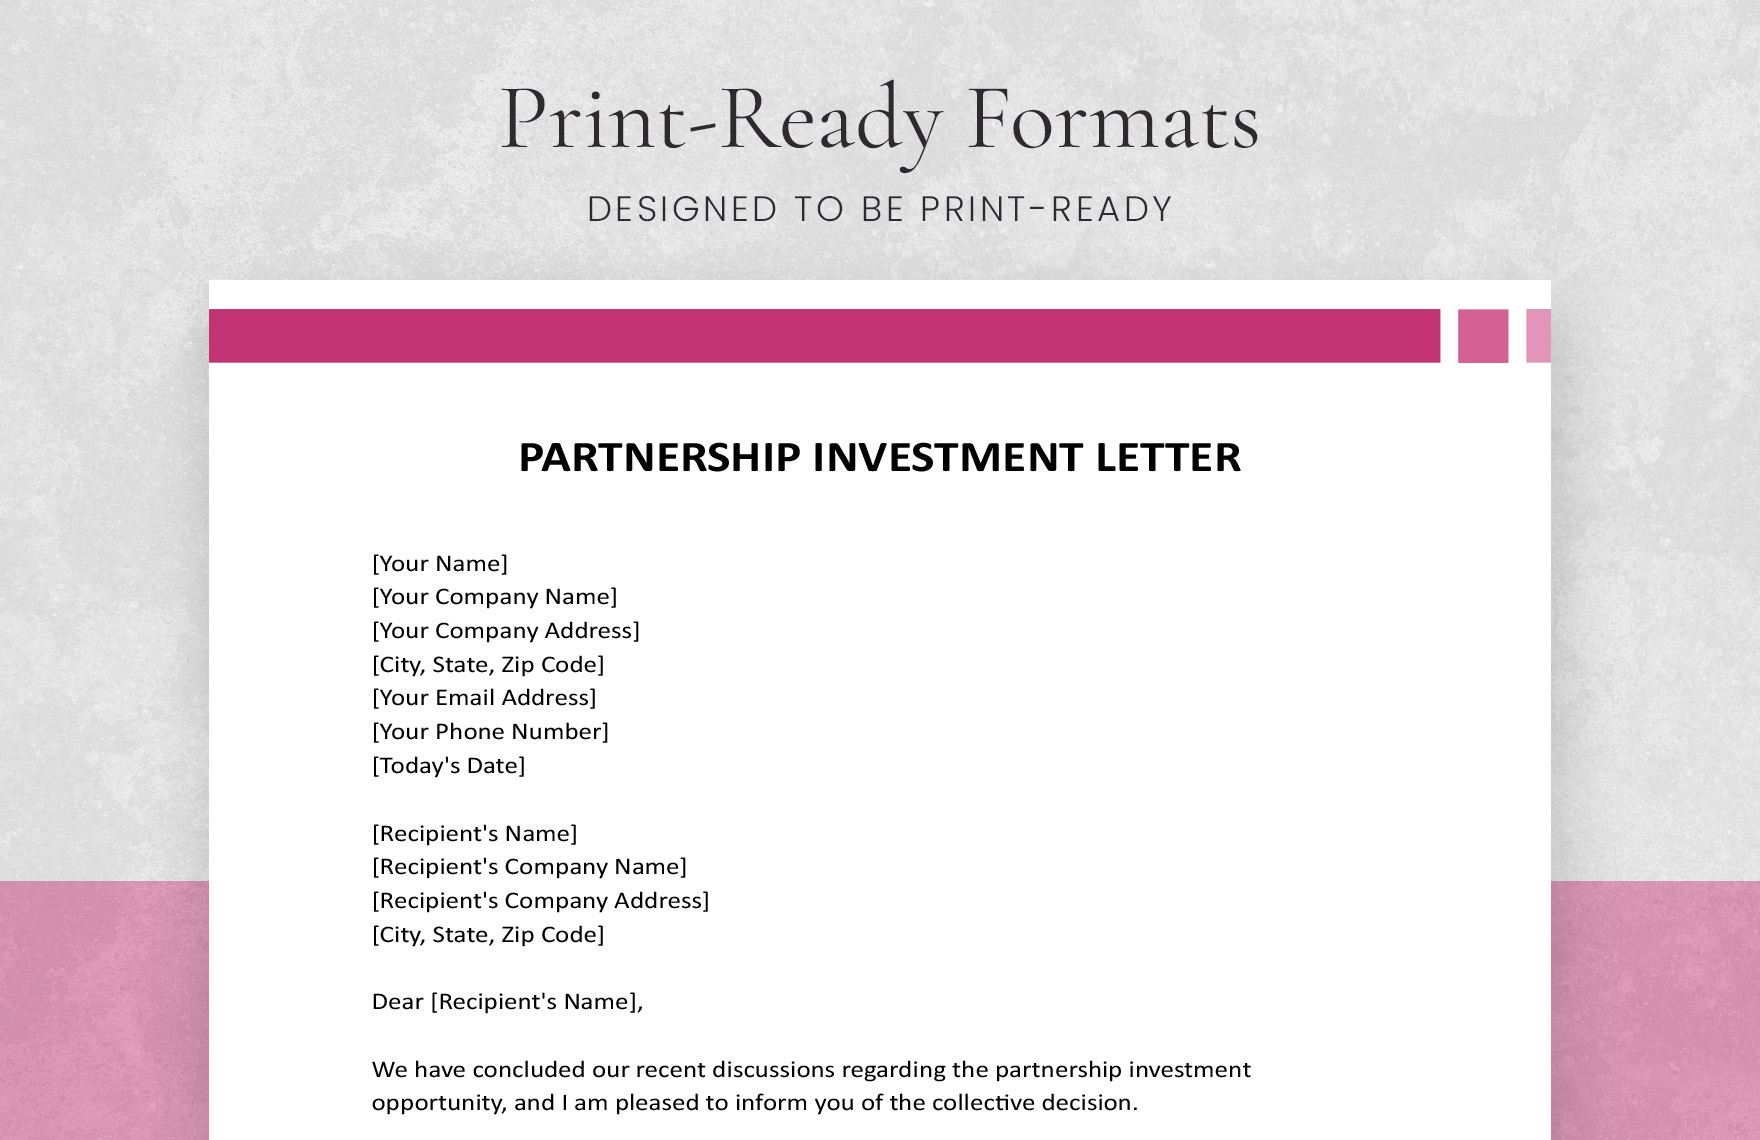 Partnership Investment Letter